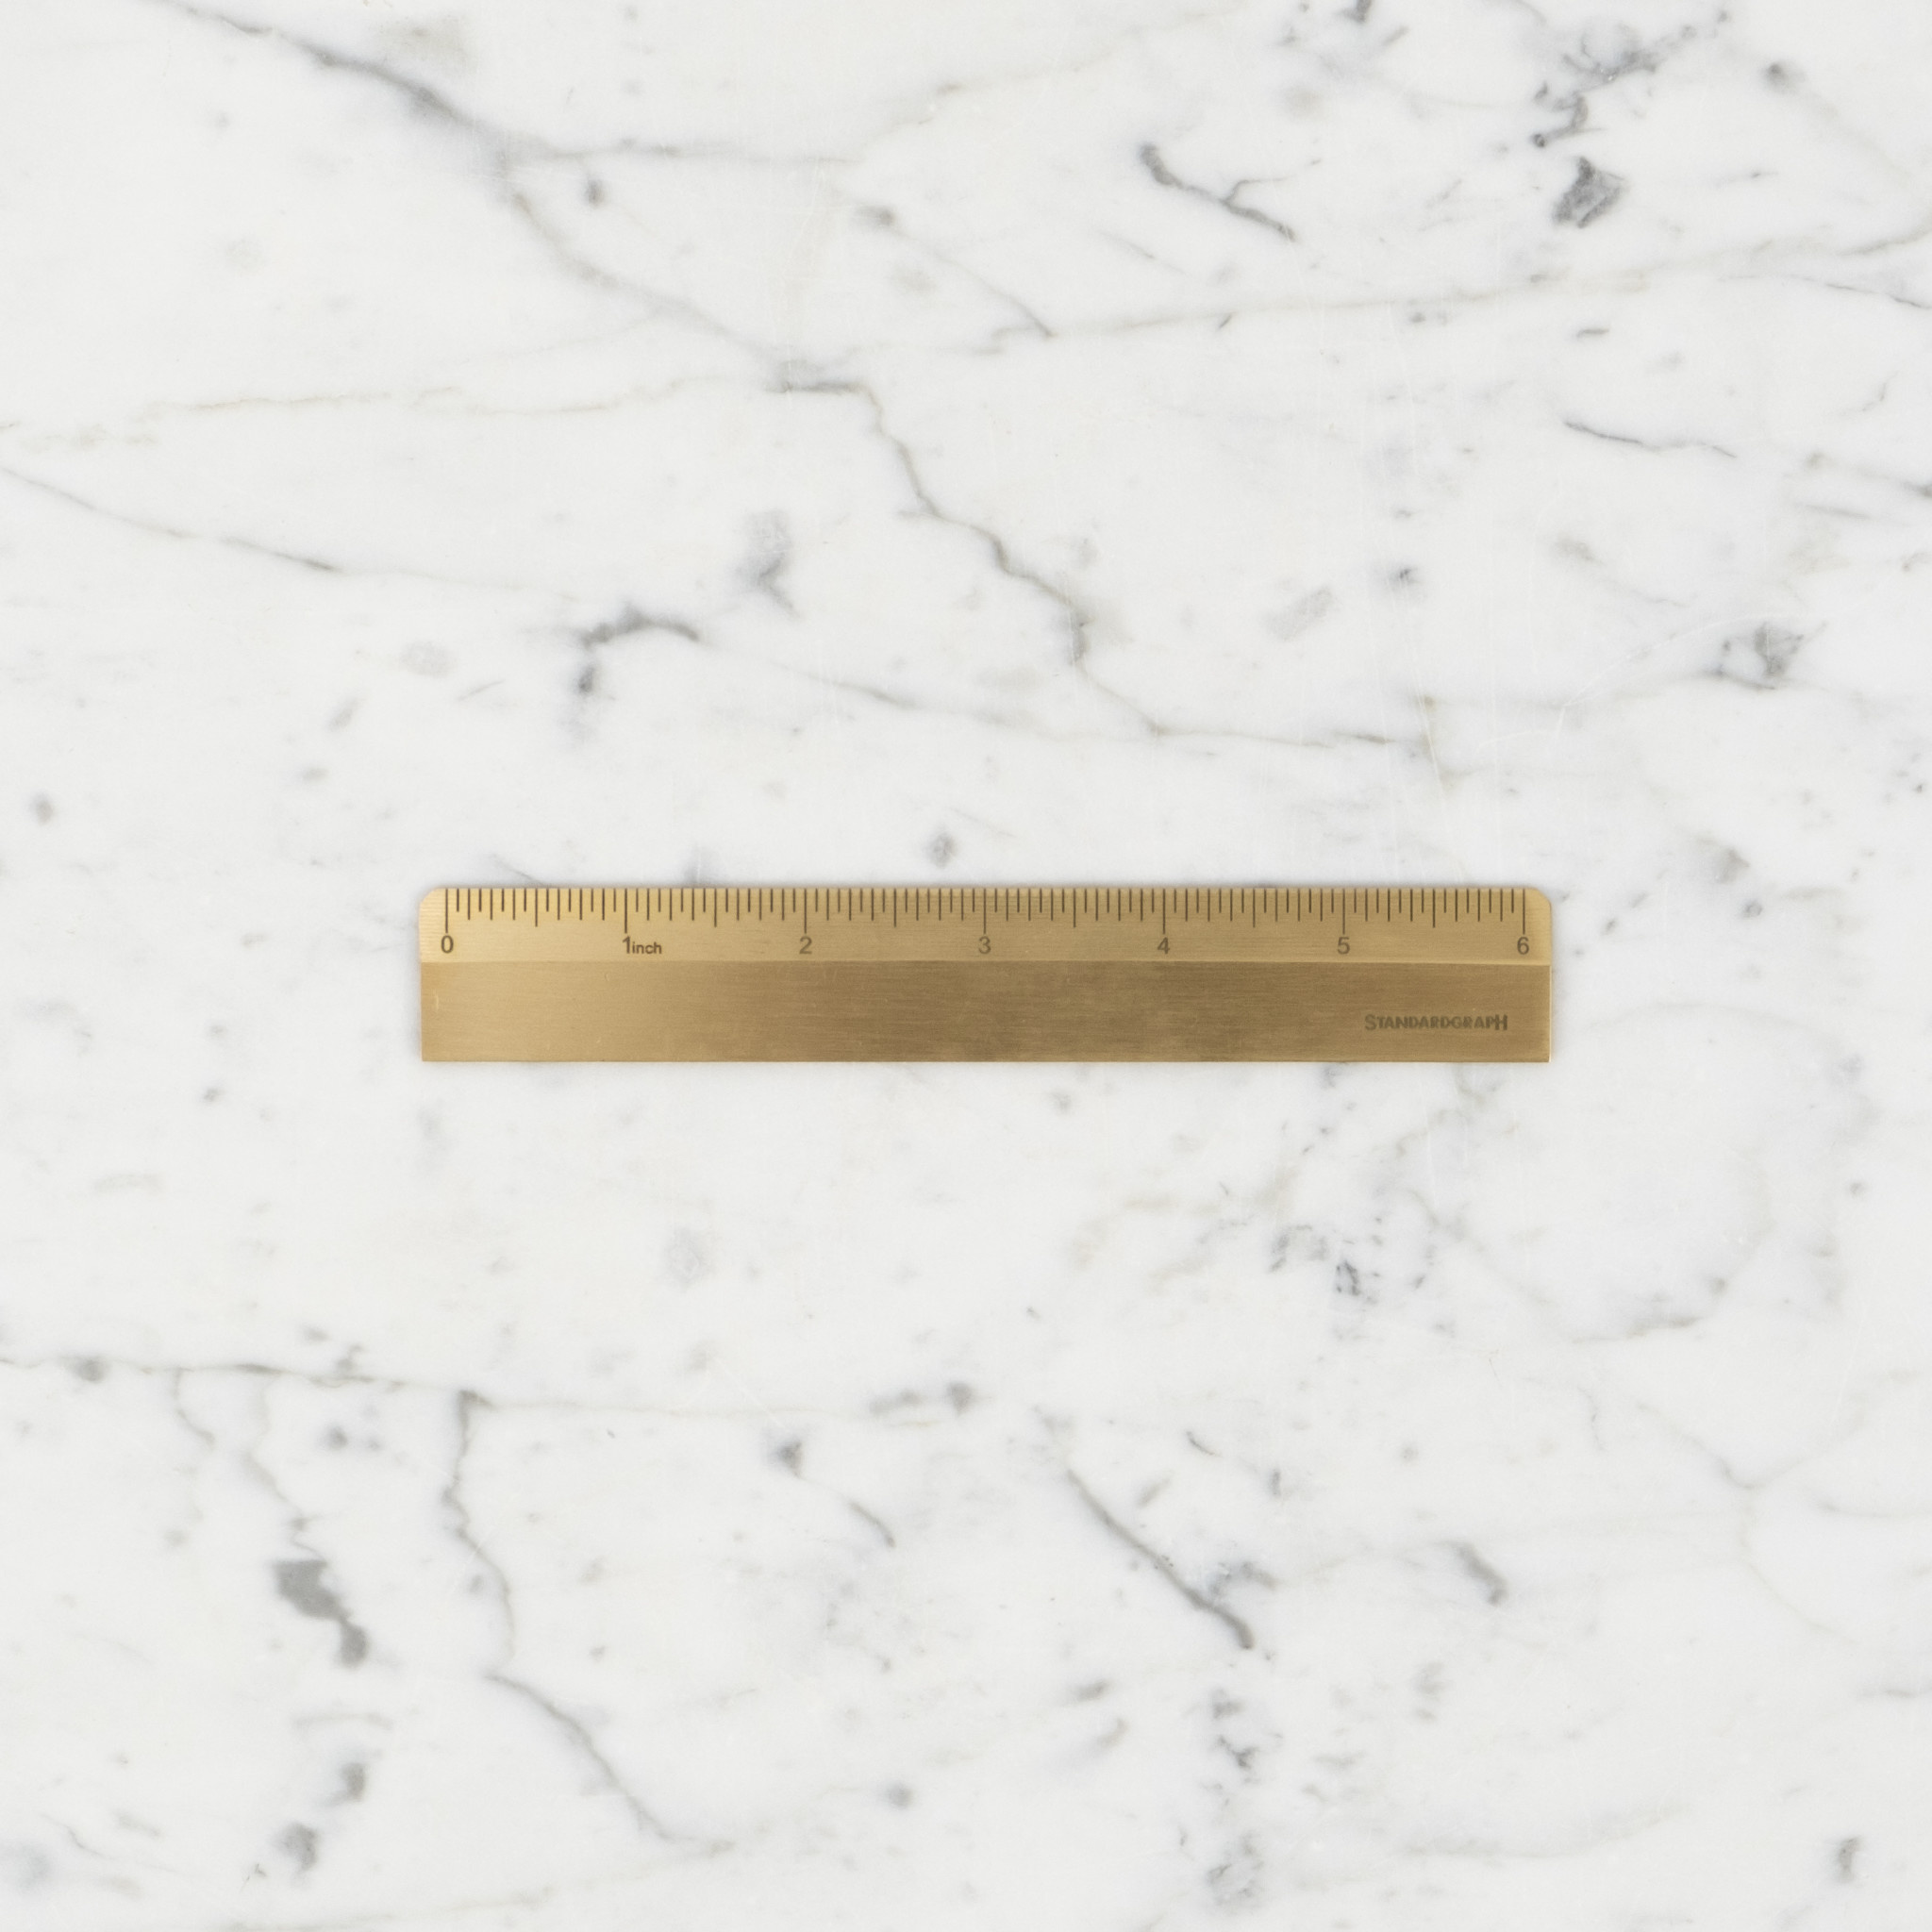 Brass Ruler - Inch Scale